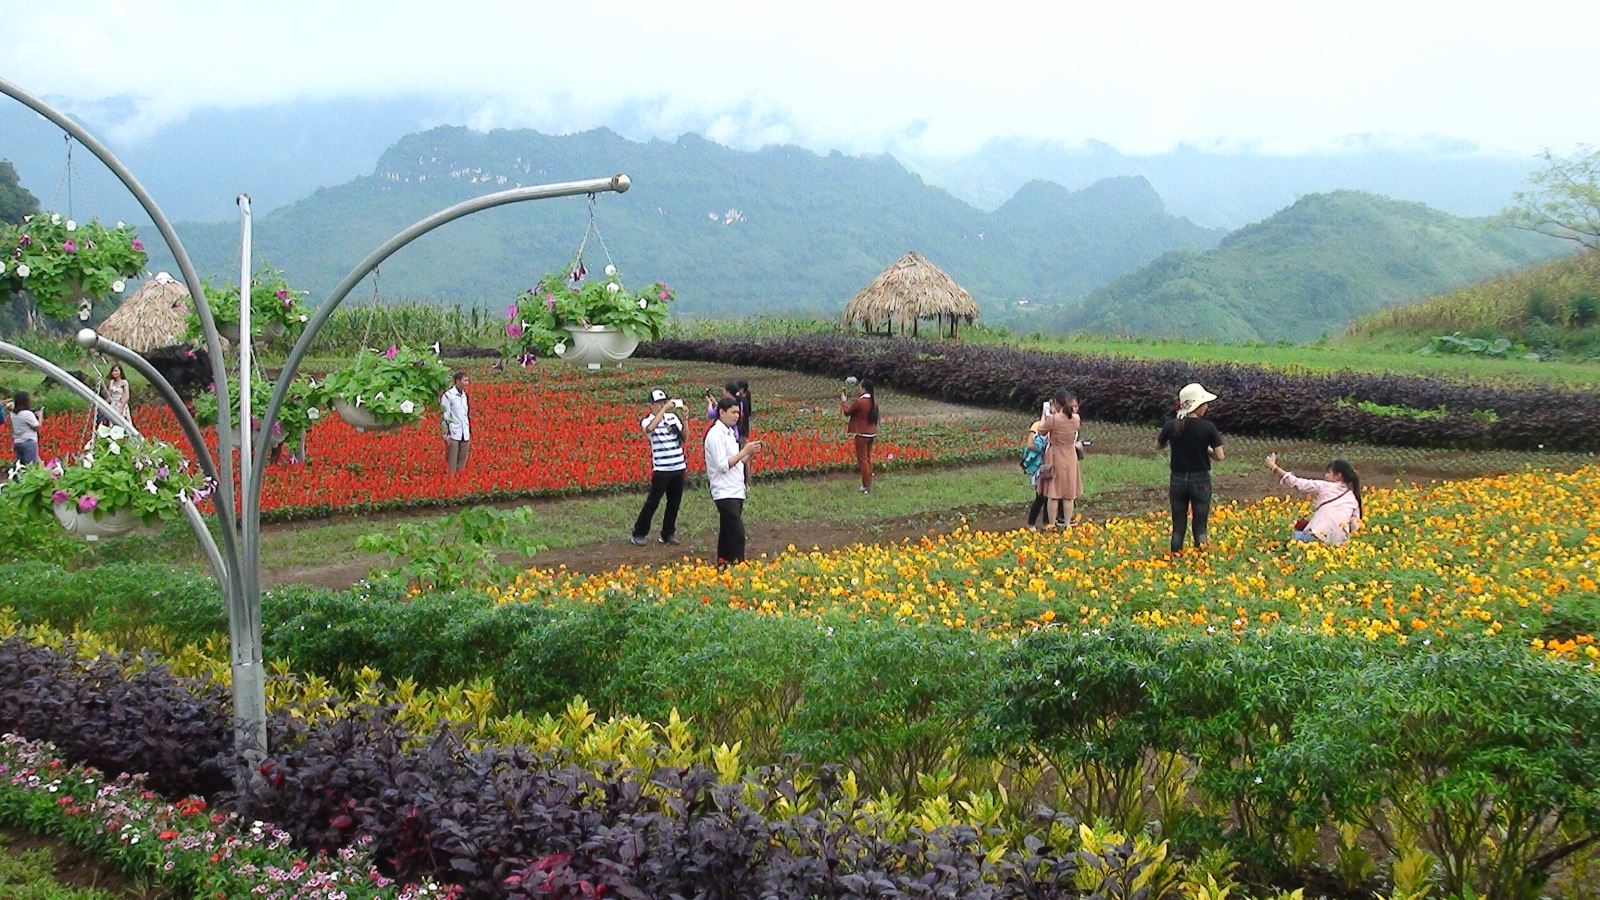 Bình Nguyên Xanh Khai Trung không chỉ có màu xanh của cây cối mà còn có những sắc màu rực rỡ của hàng trăm loài hoa đẹp